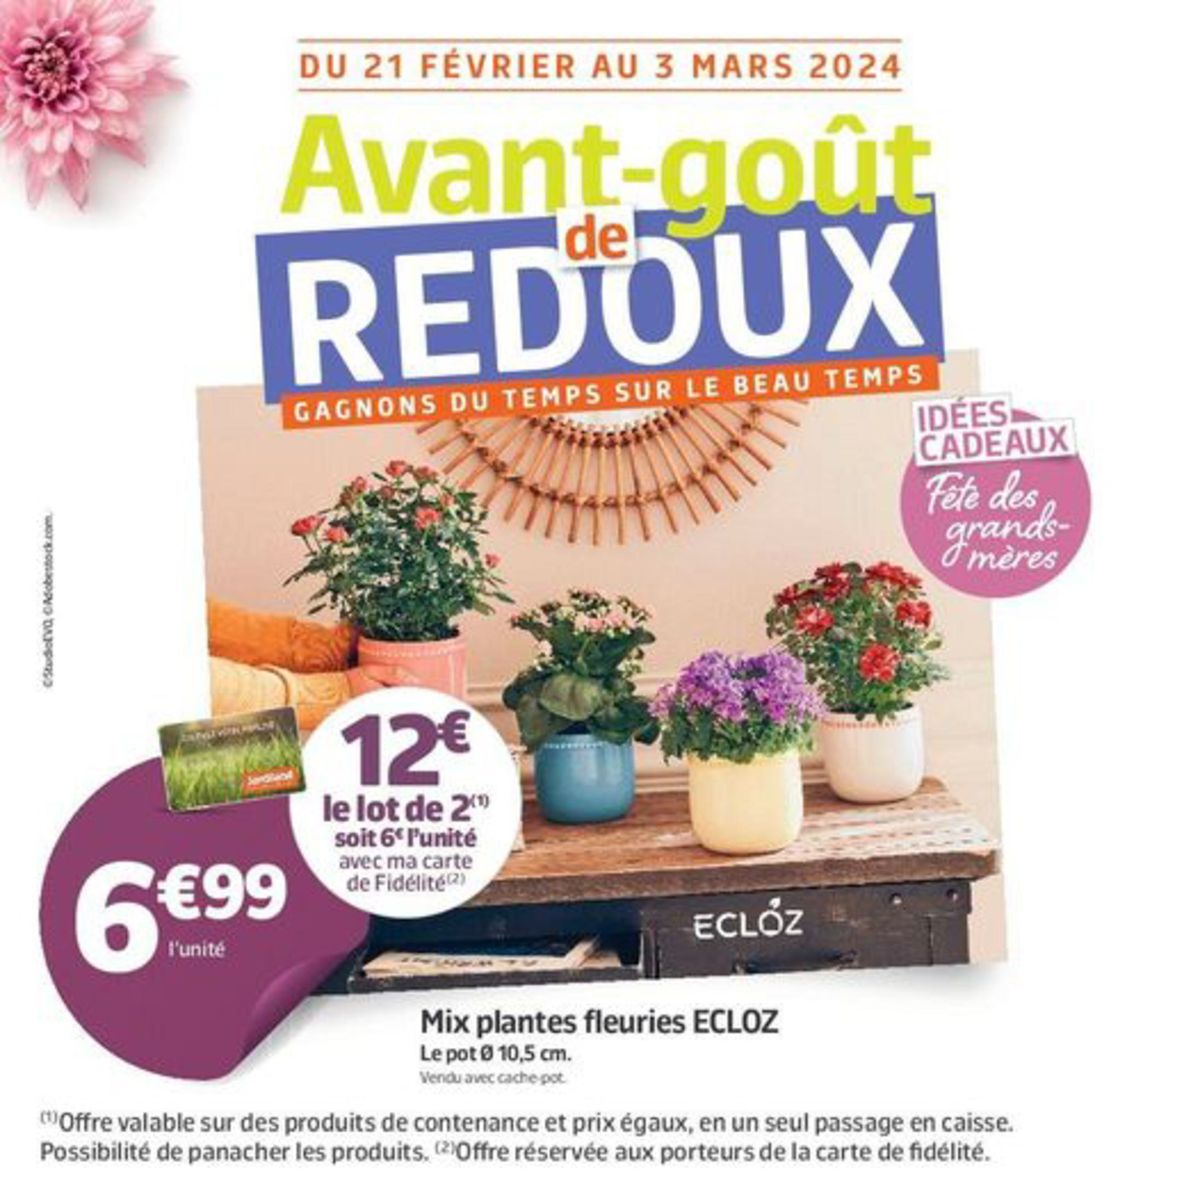 Catalogue Avant-goût de REDOUX, page 00001